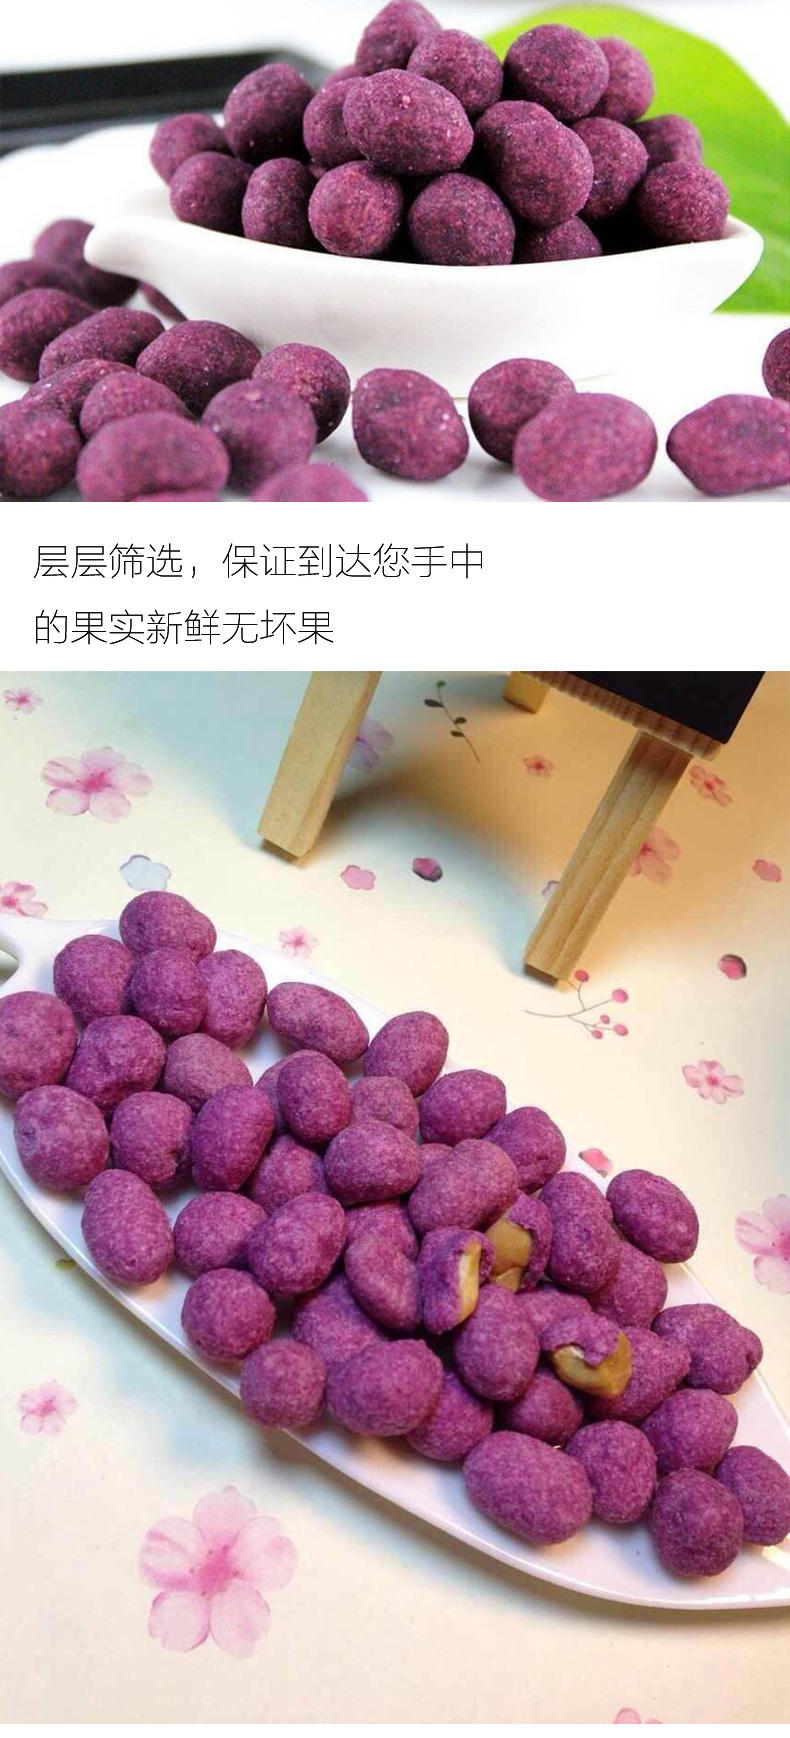 正泓食品 紫薯花生225g*2袋 休闲零食